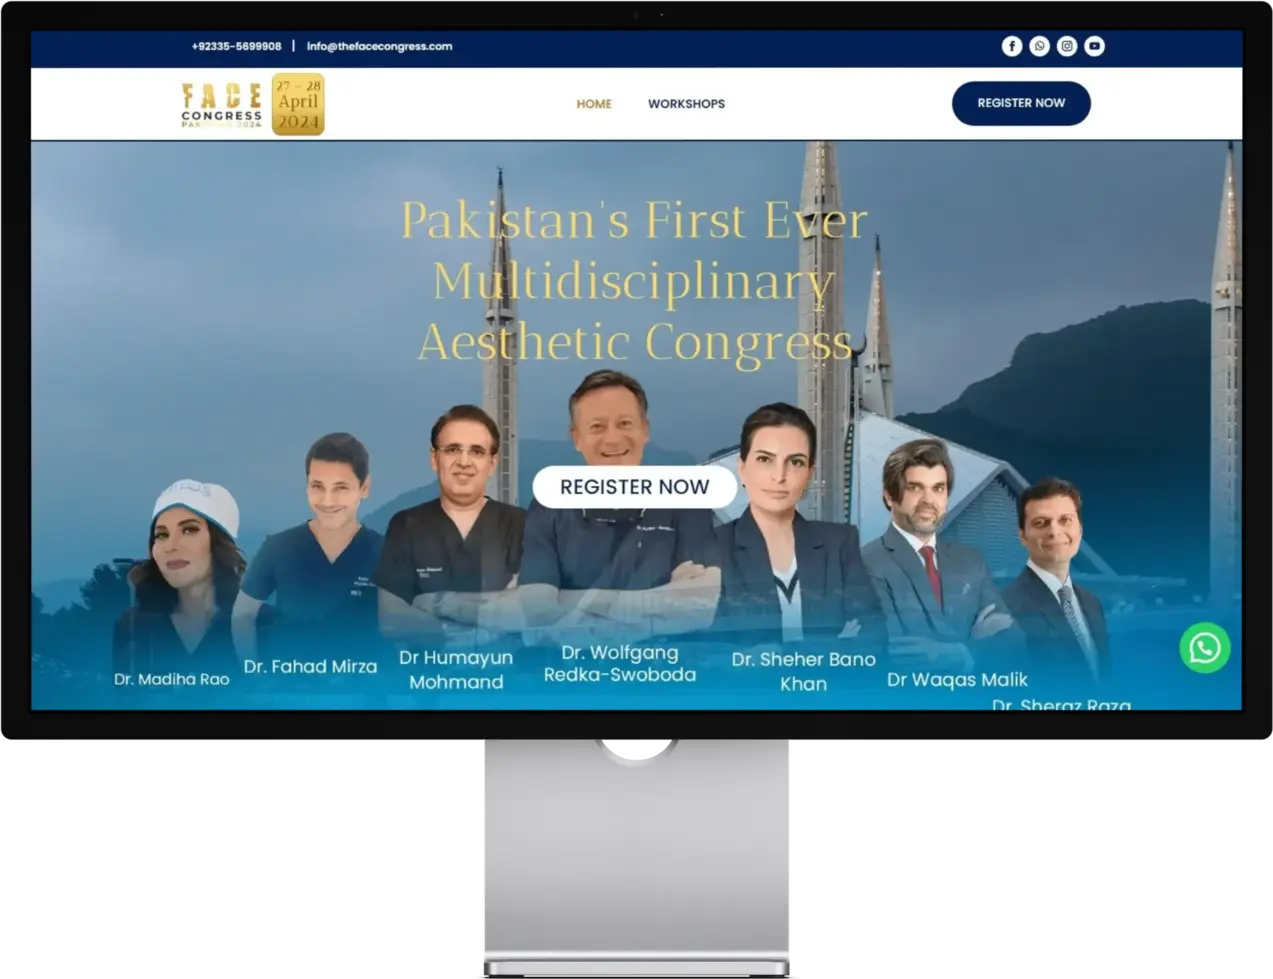 The FACE Congress Pakistan website screenshot